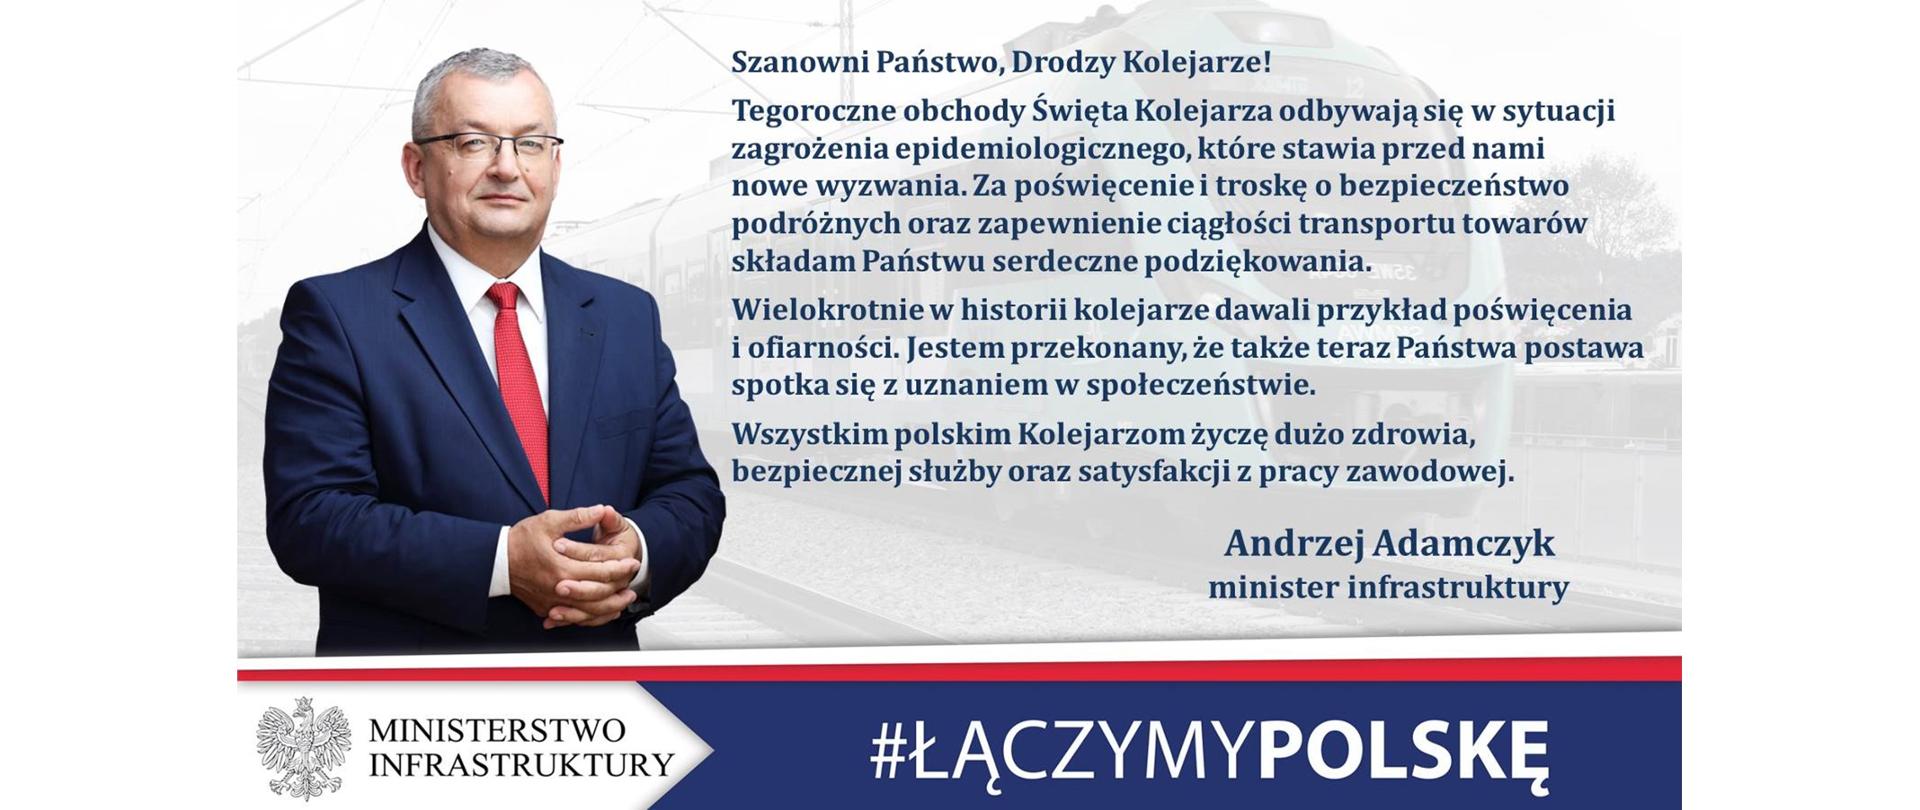 Życzenia od ministra Andrzeja Adamczyka z okazji Święta Kolejarza - infografika